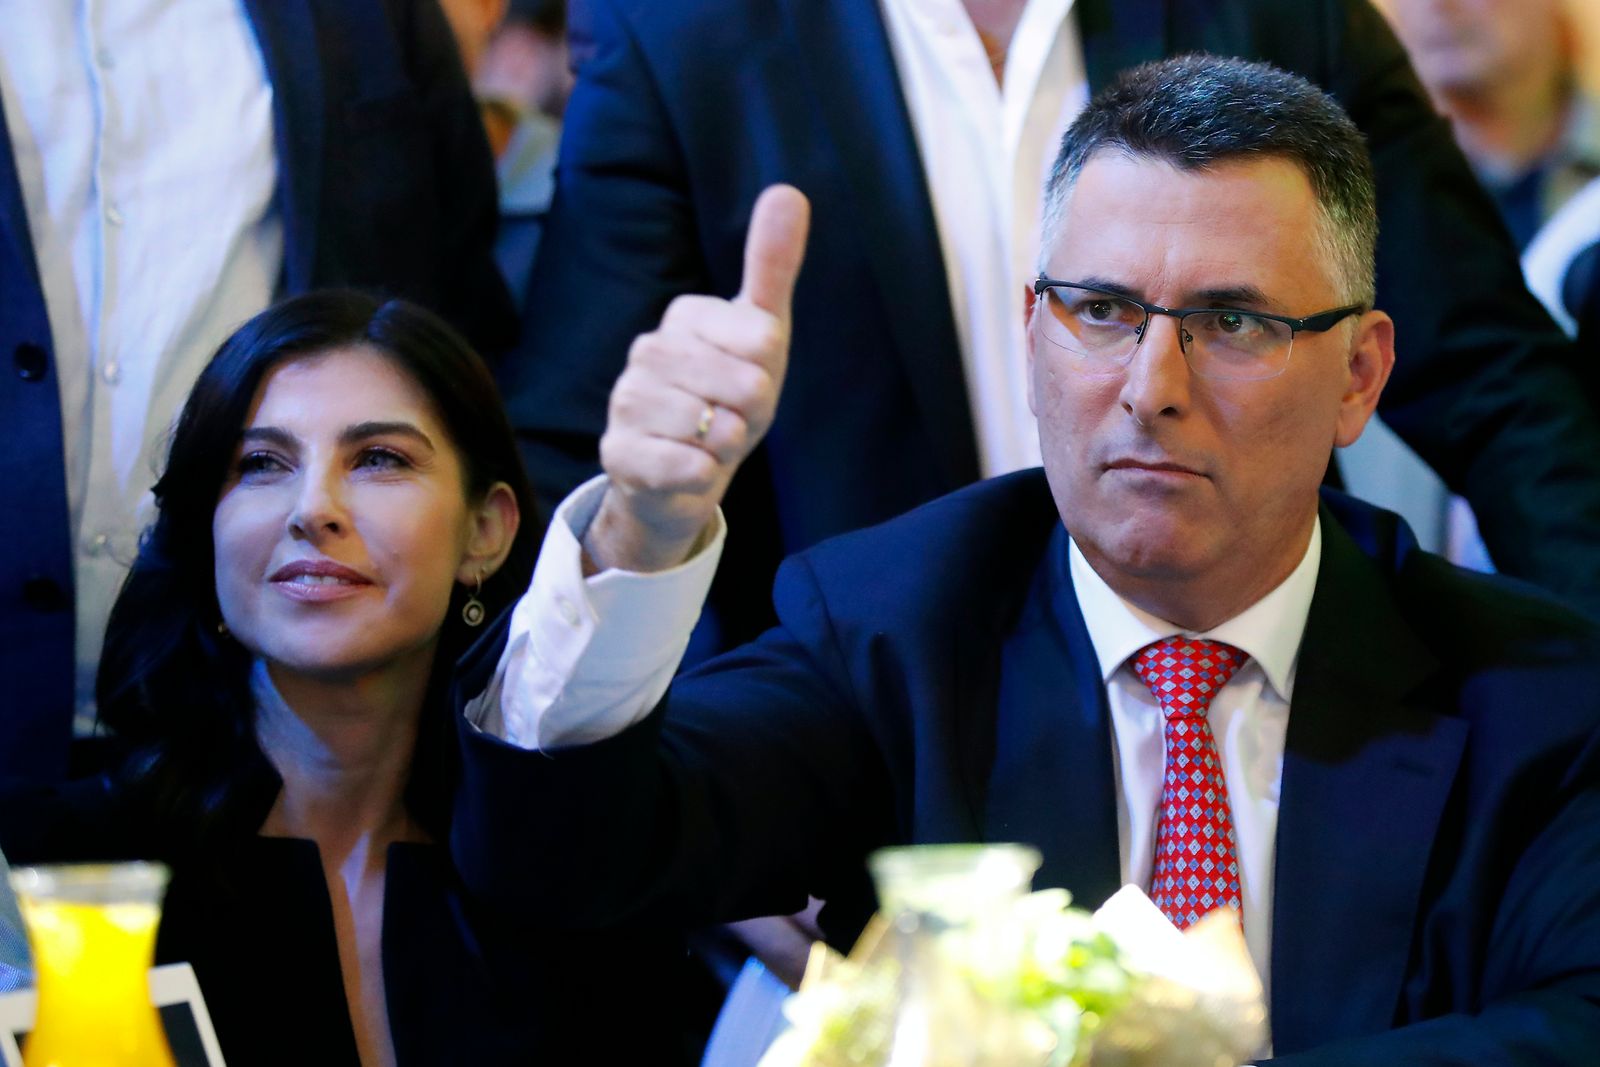 جدعون ساعر  برفقة زوجته جولا إيفين ساعر، خلال إطلاق حملته لقيادة حزب الليكود -  16 ديسمبر 2019 - AFP